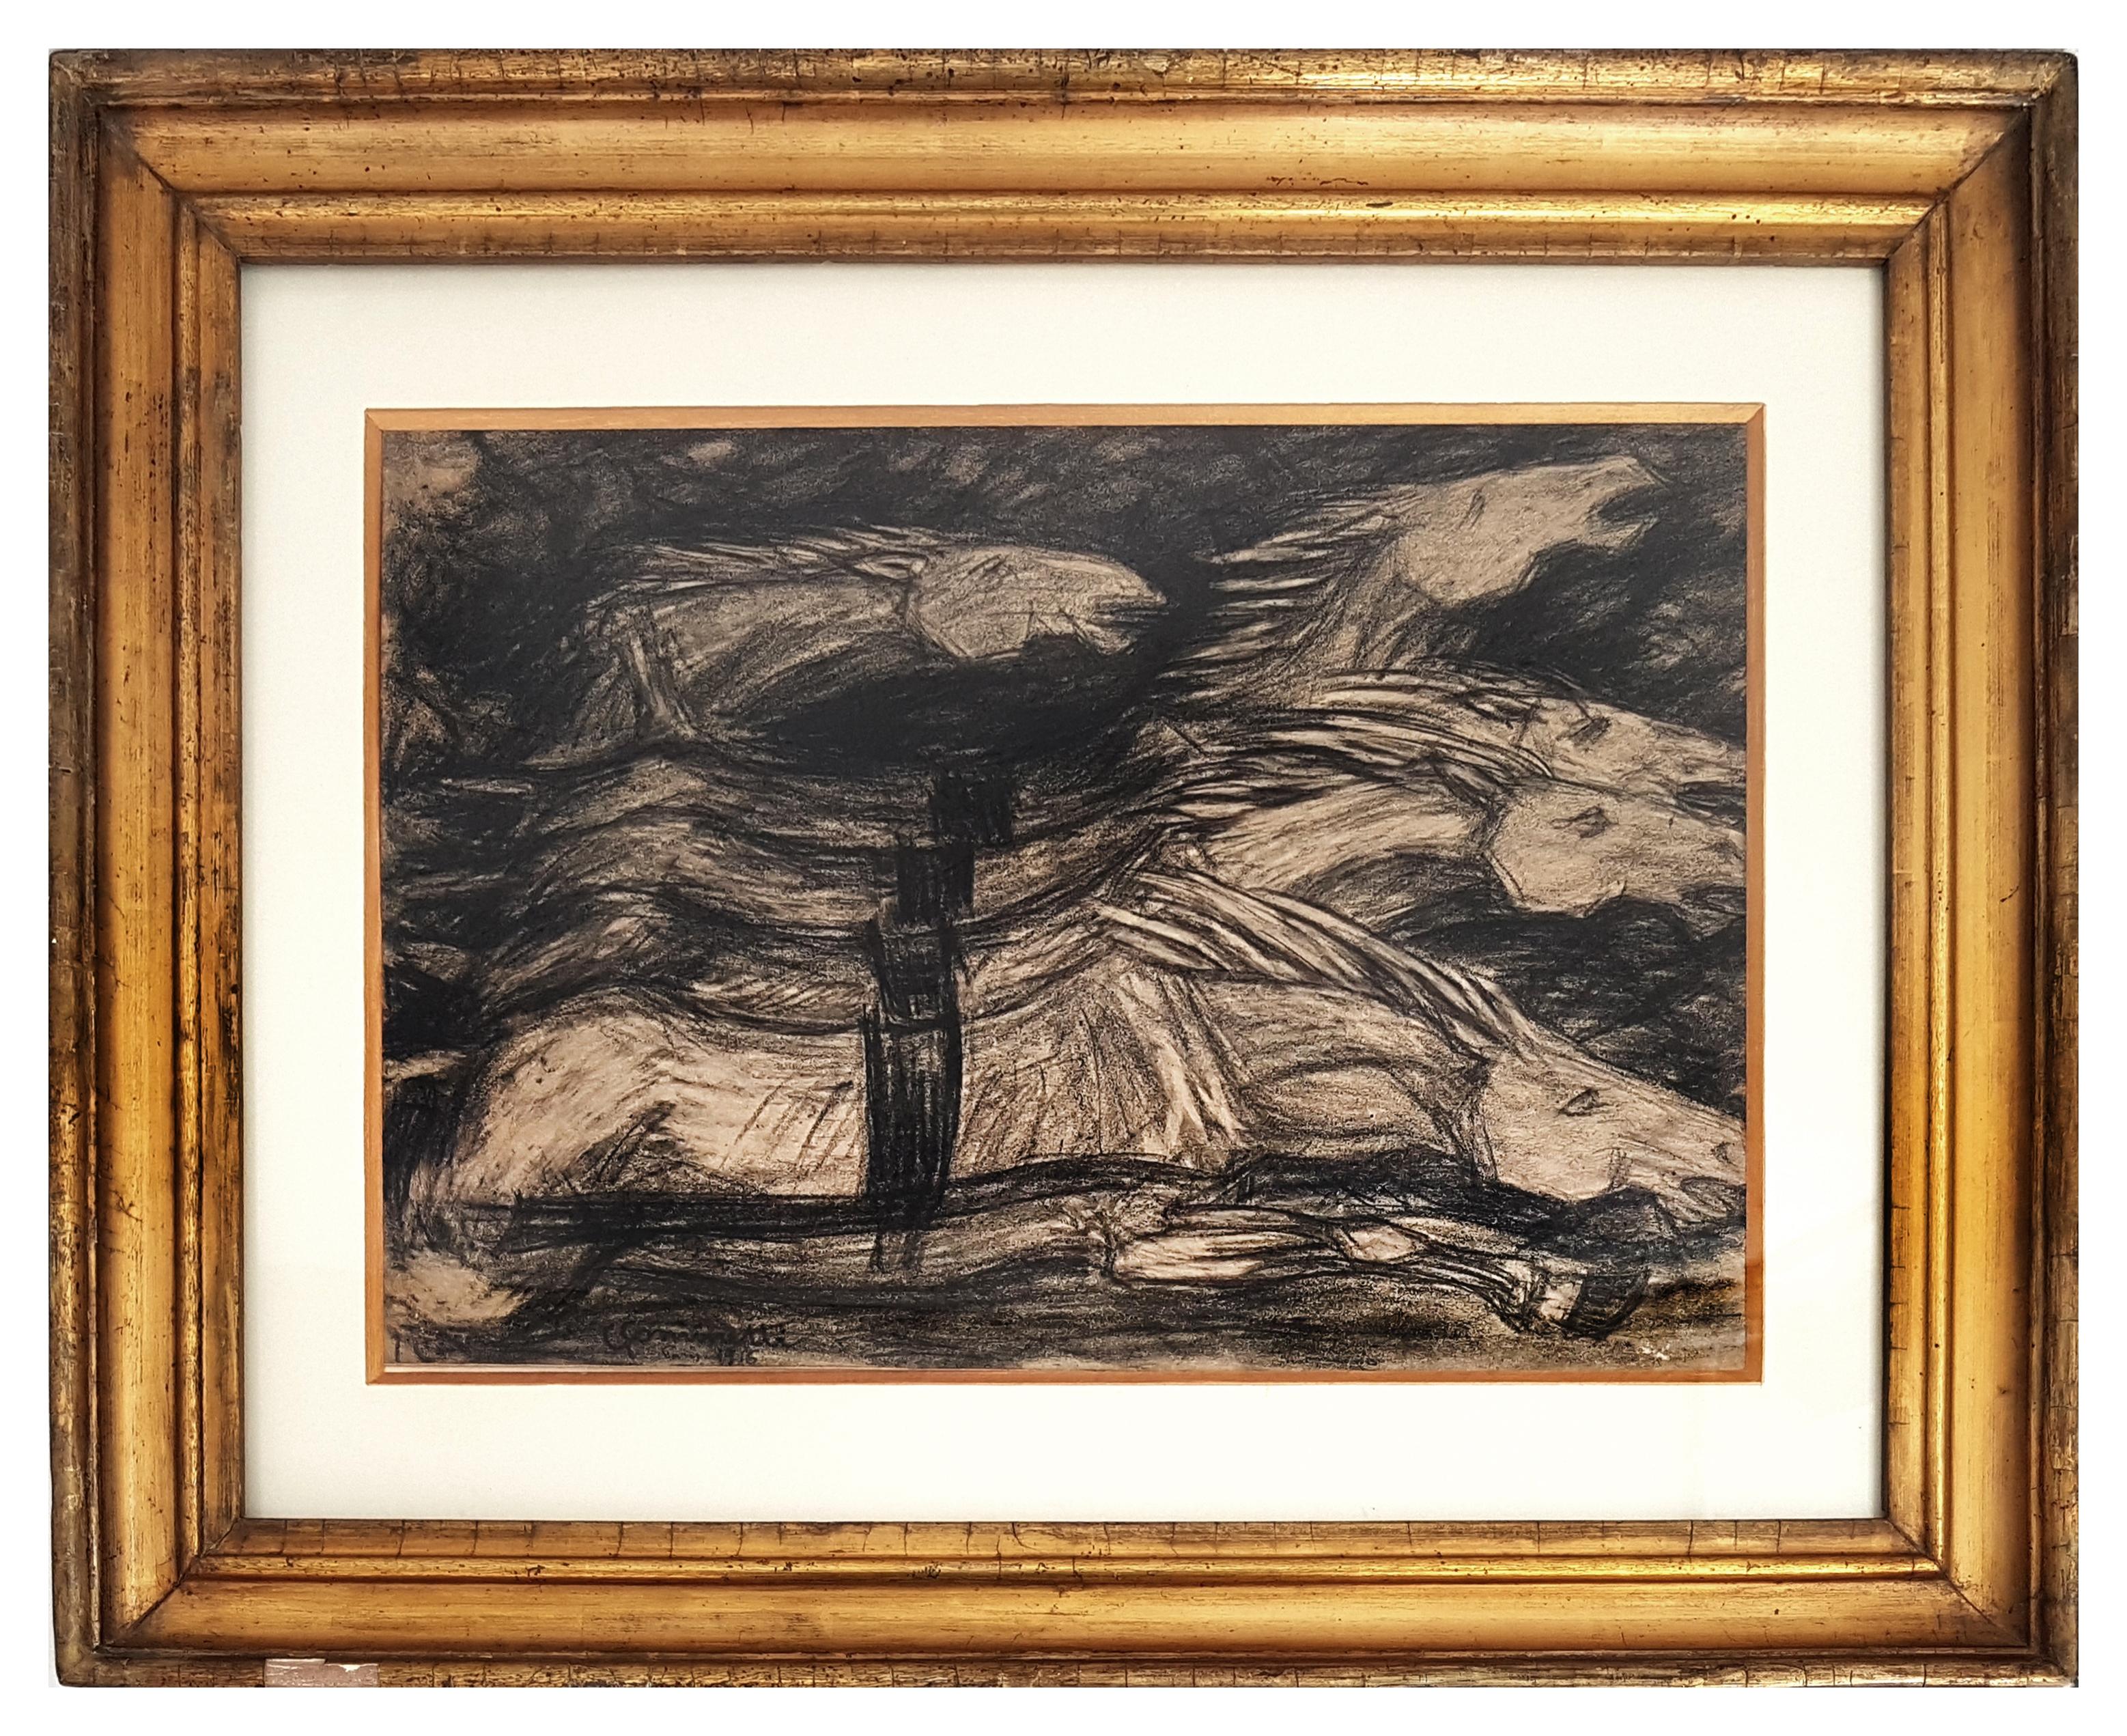 Galloping Horses ist eine wunderbare und originelle Zeichnung in Kohle auf Papier, realisiert von dem italienischen Künstler Giuseppe Cominetti.
Handsigniert in Kohle und datiert am unteren linken Rand "Paris, 1916". 
Es handelt sich um eine sehr